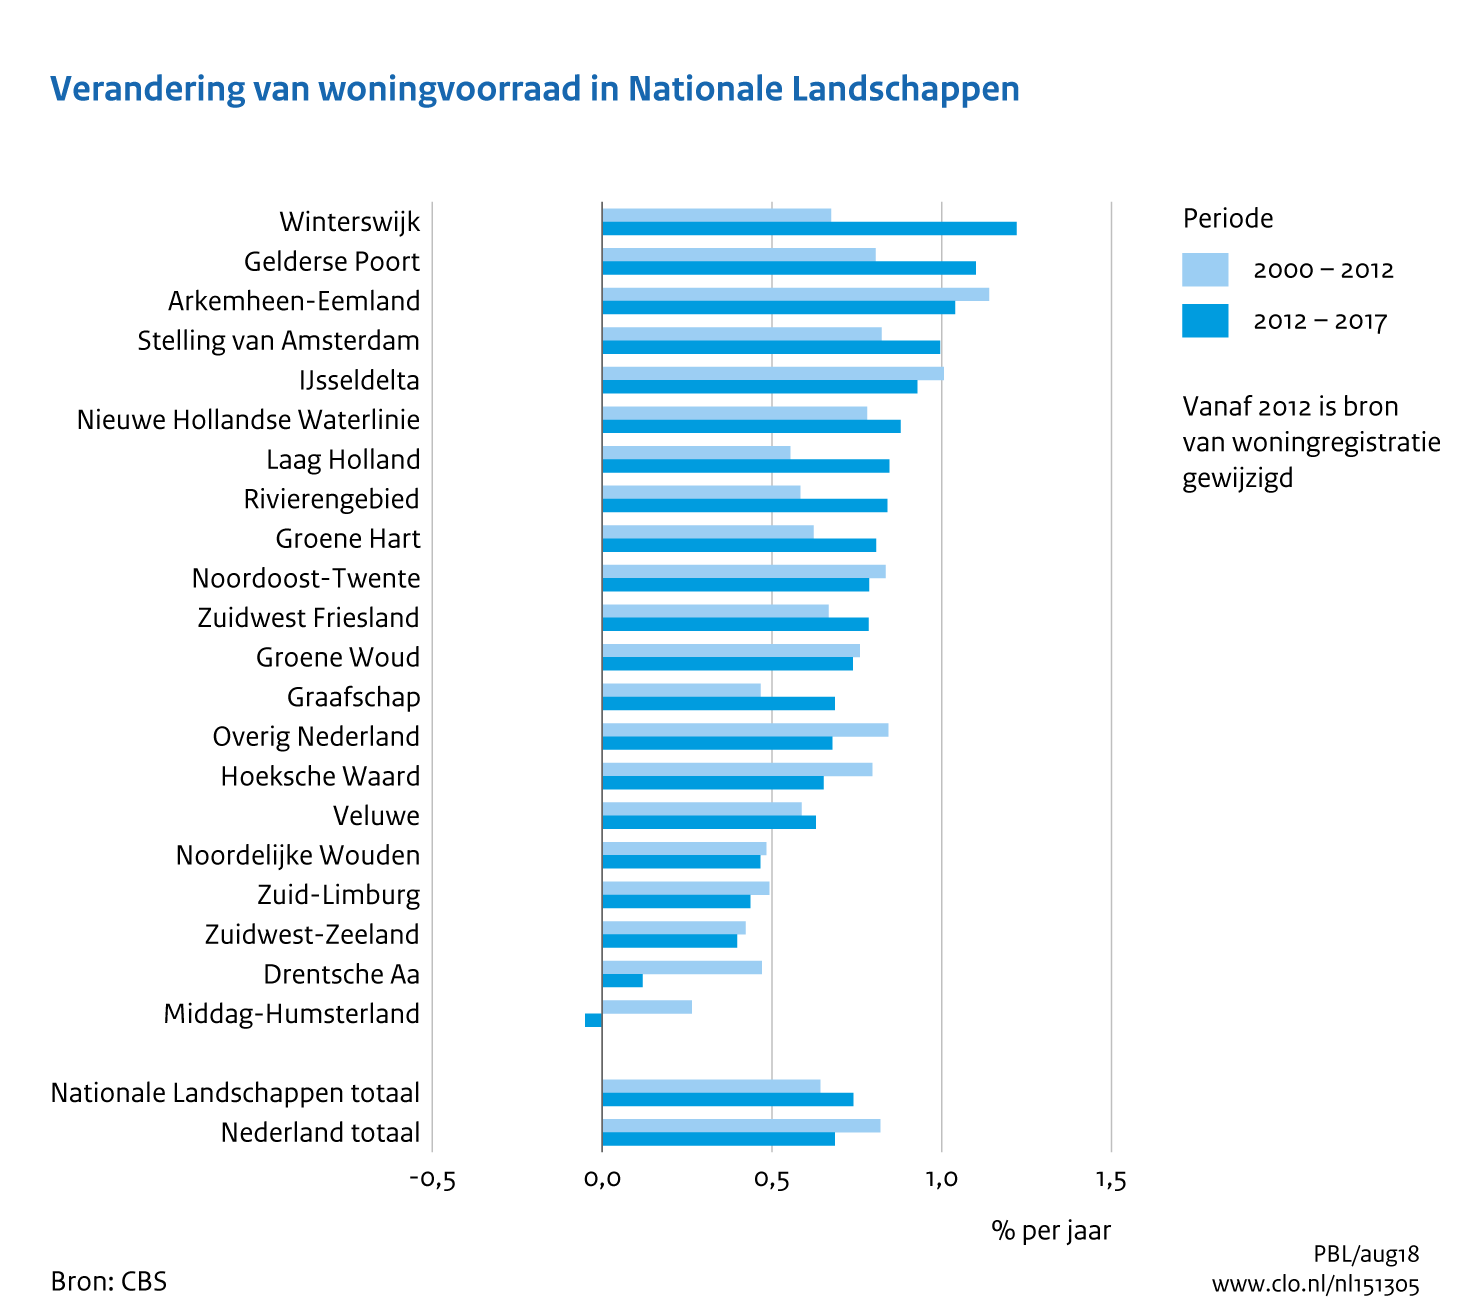 Figuur Jaarlijkse relatieve verandering woningvoorraad in de Nationale Landschappen, 2000-2015. In de rest van de tekst wordt deze figuur uitgebreider uitgelegd.